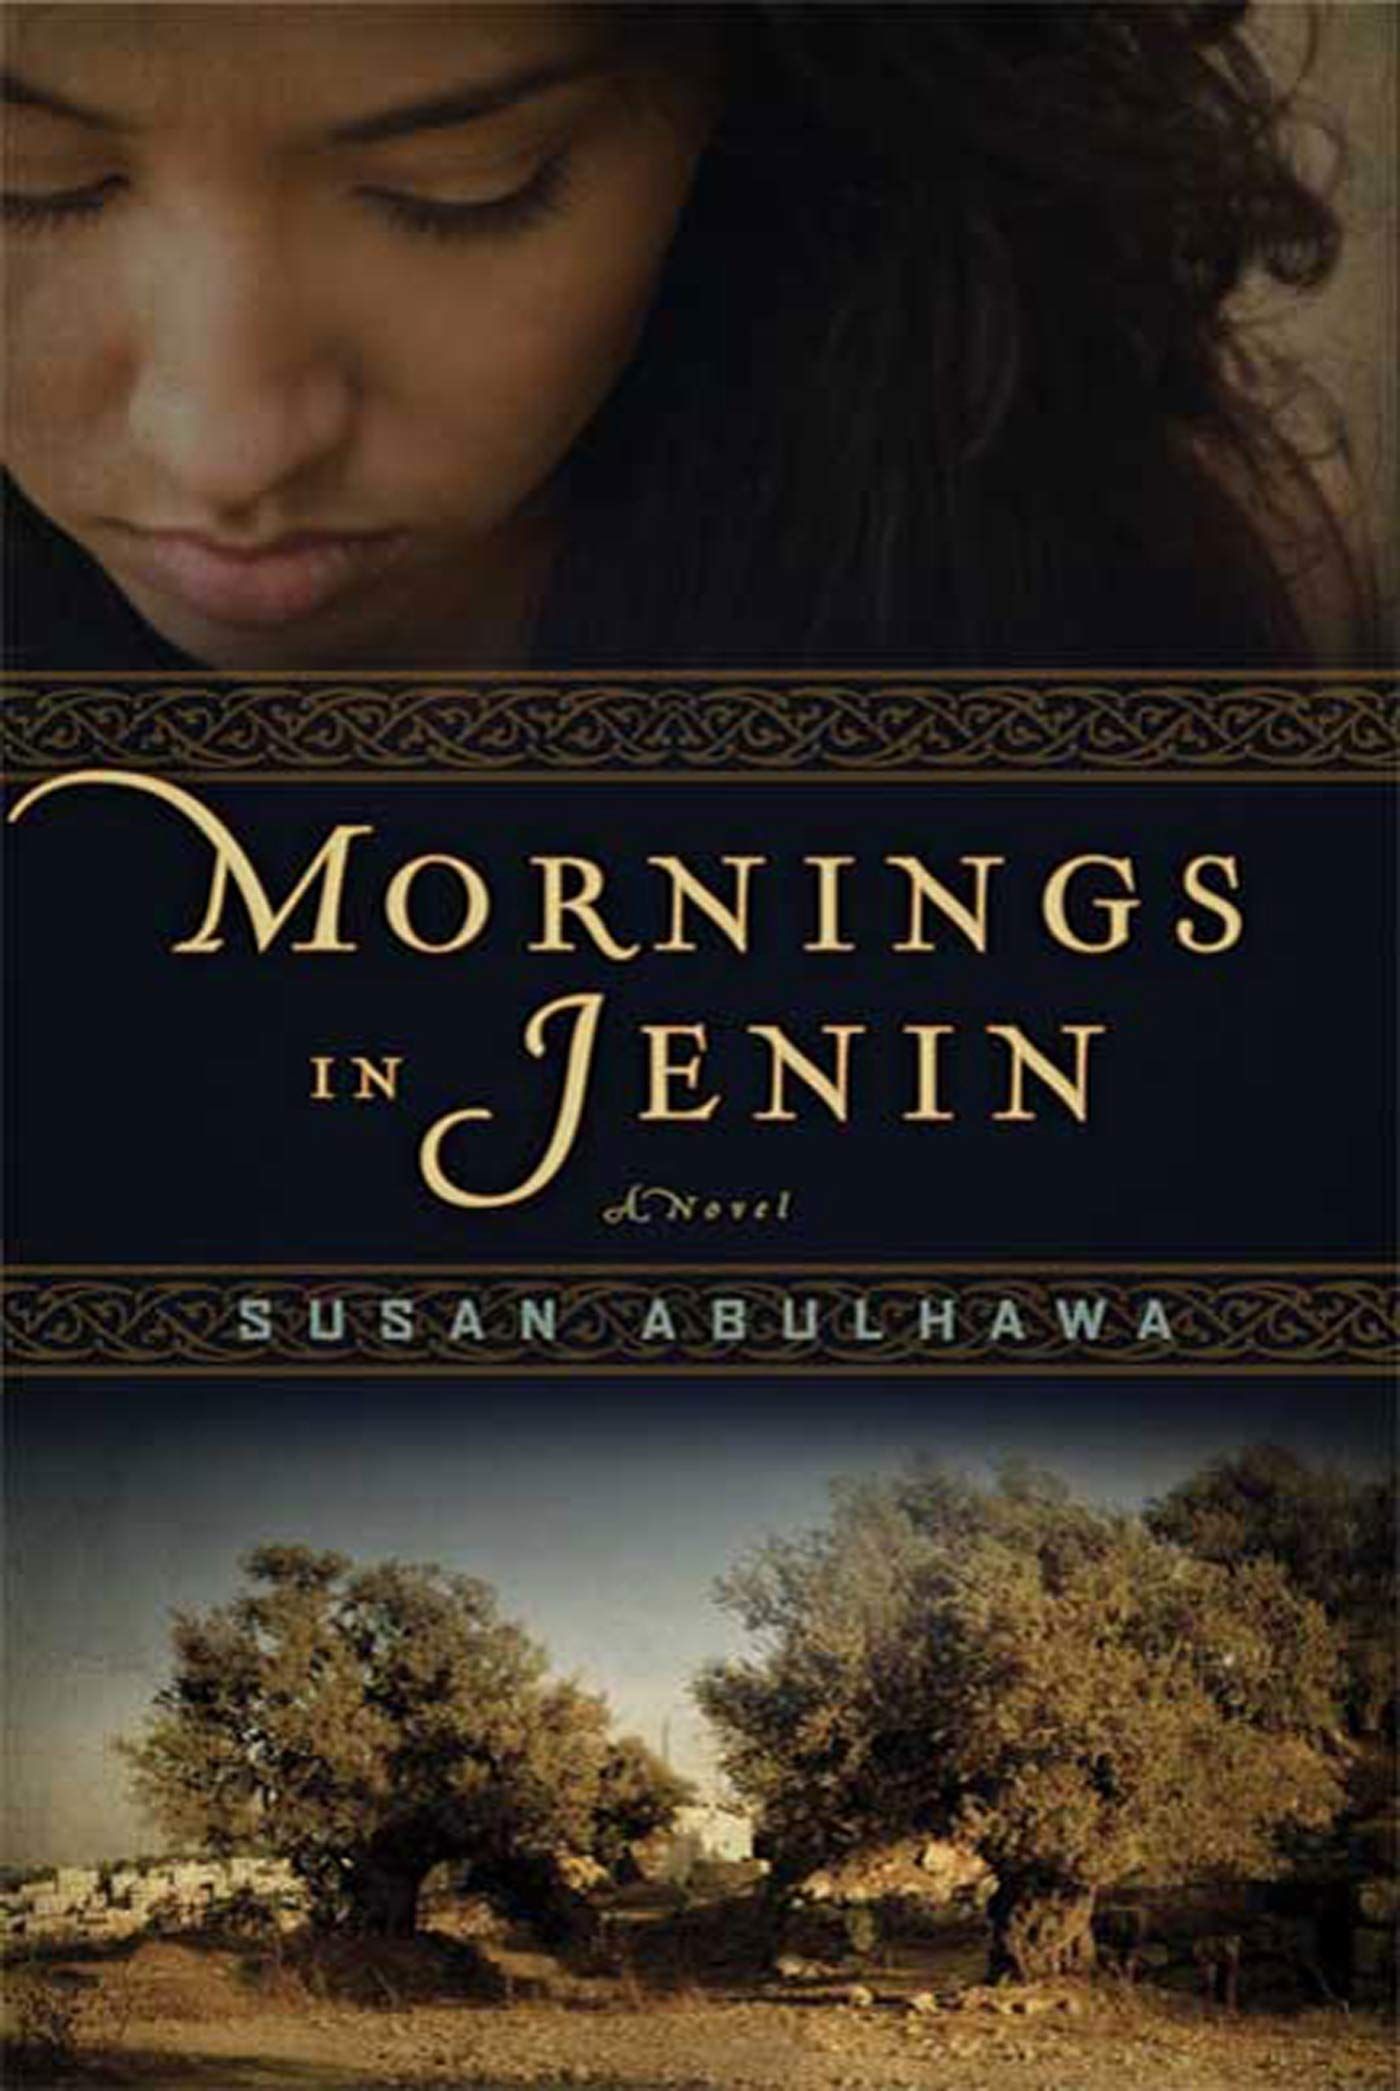 Mornings in Jenin book cover